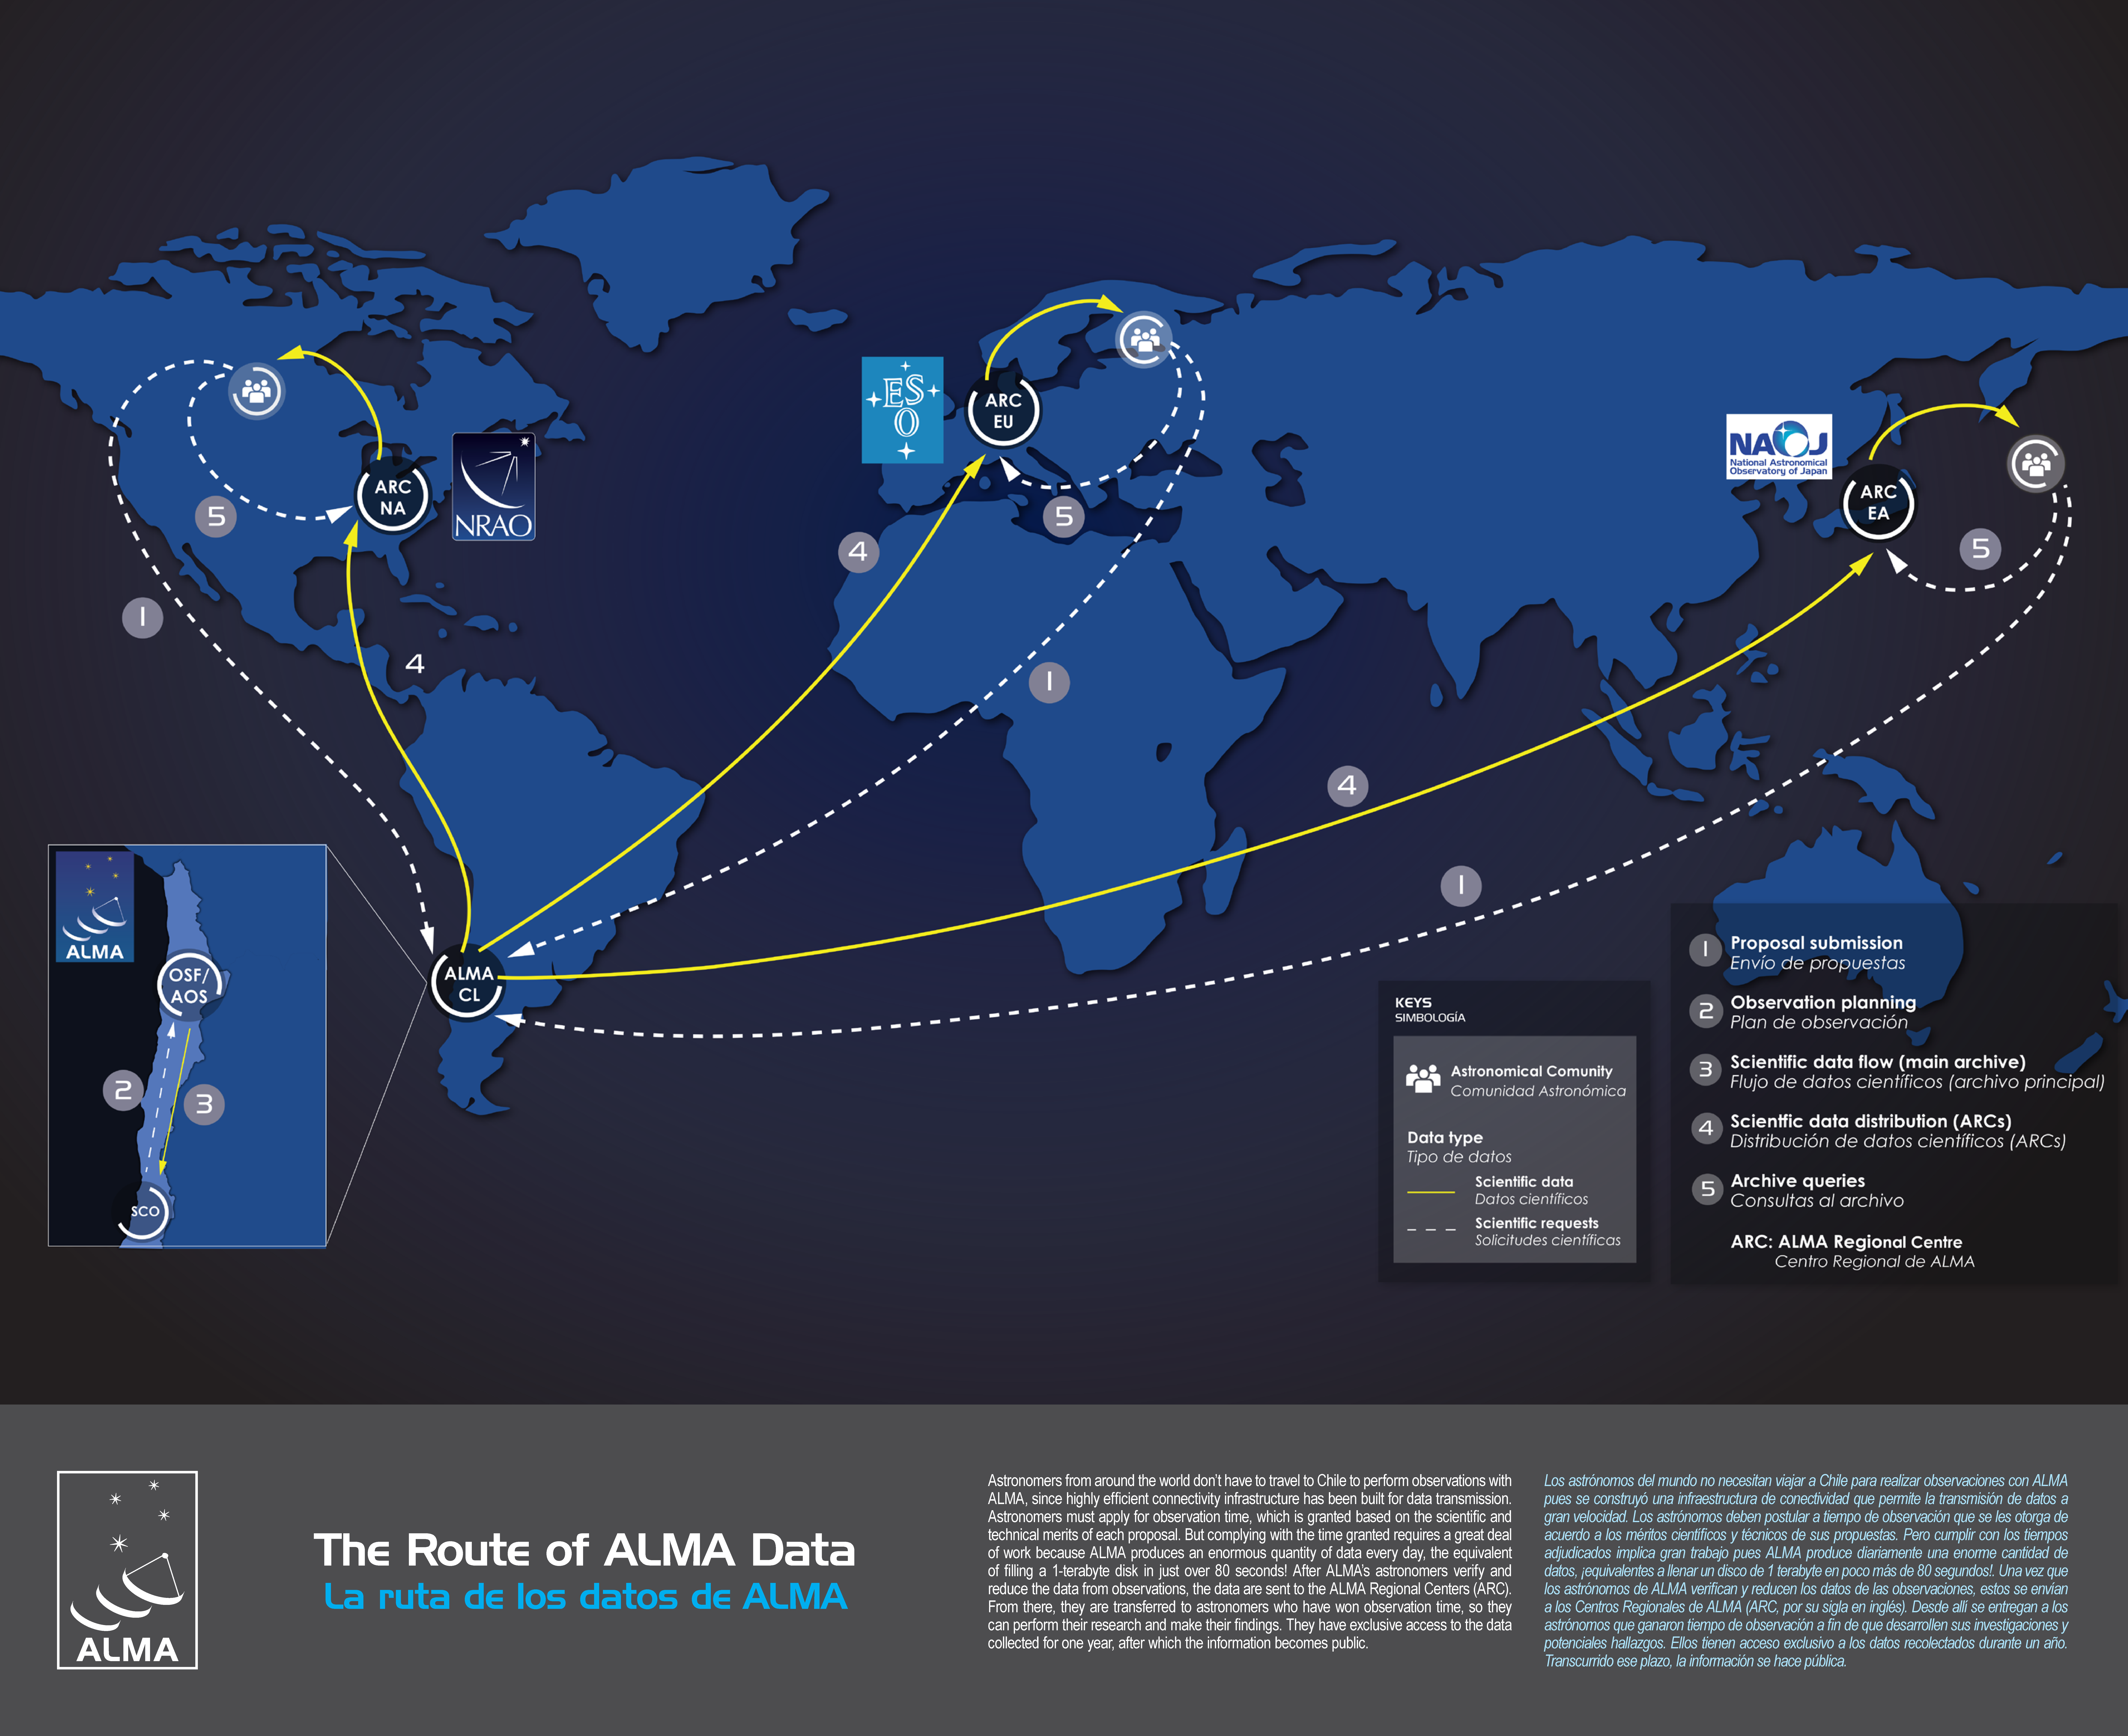 La ruta de los datos de ALMA.